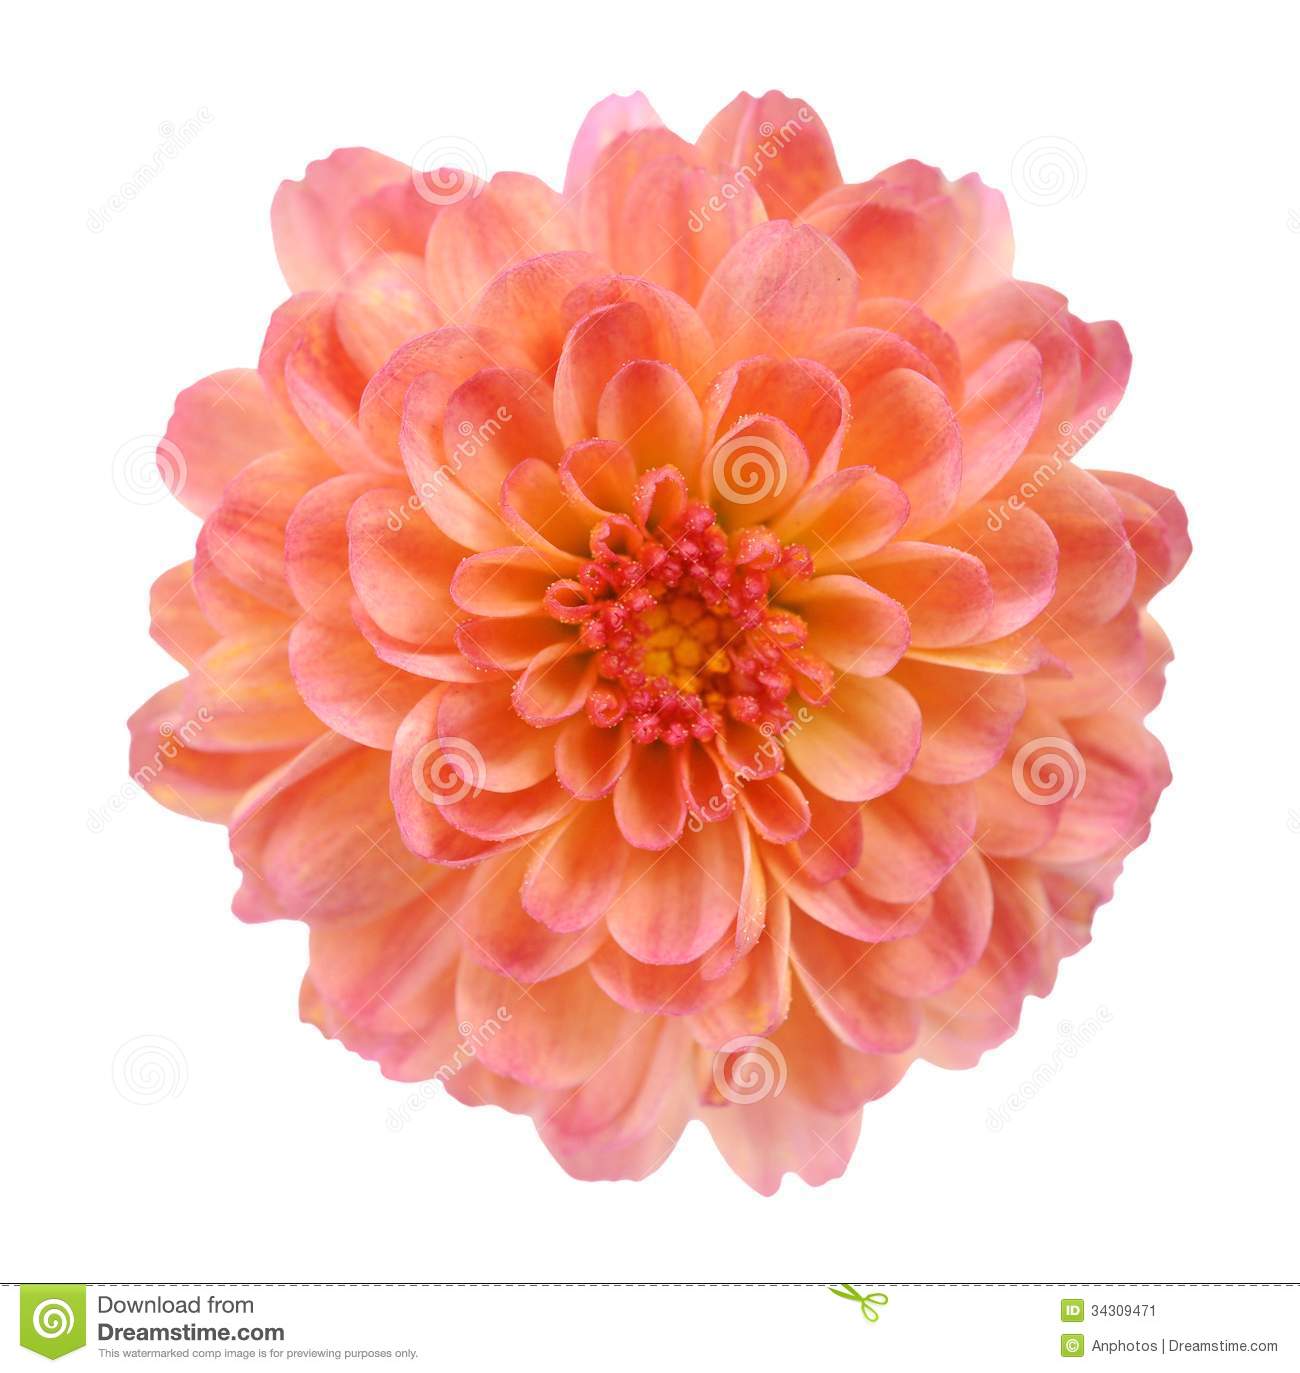 Orange Mum Flower Stock Image   Image  34309471